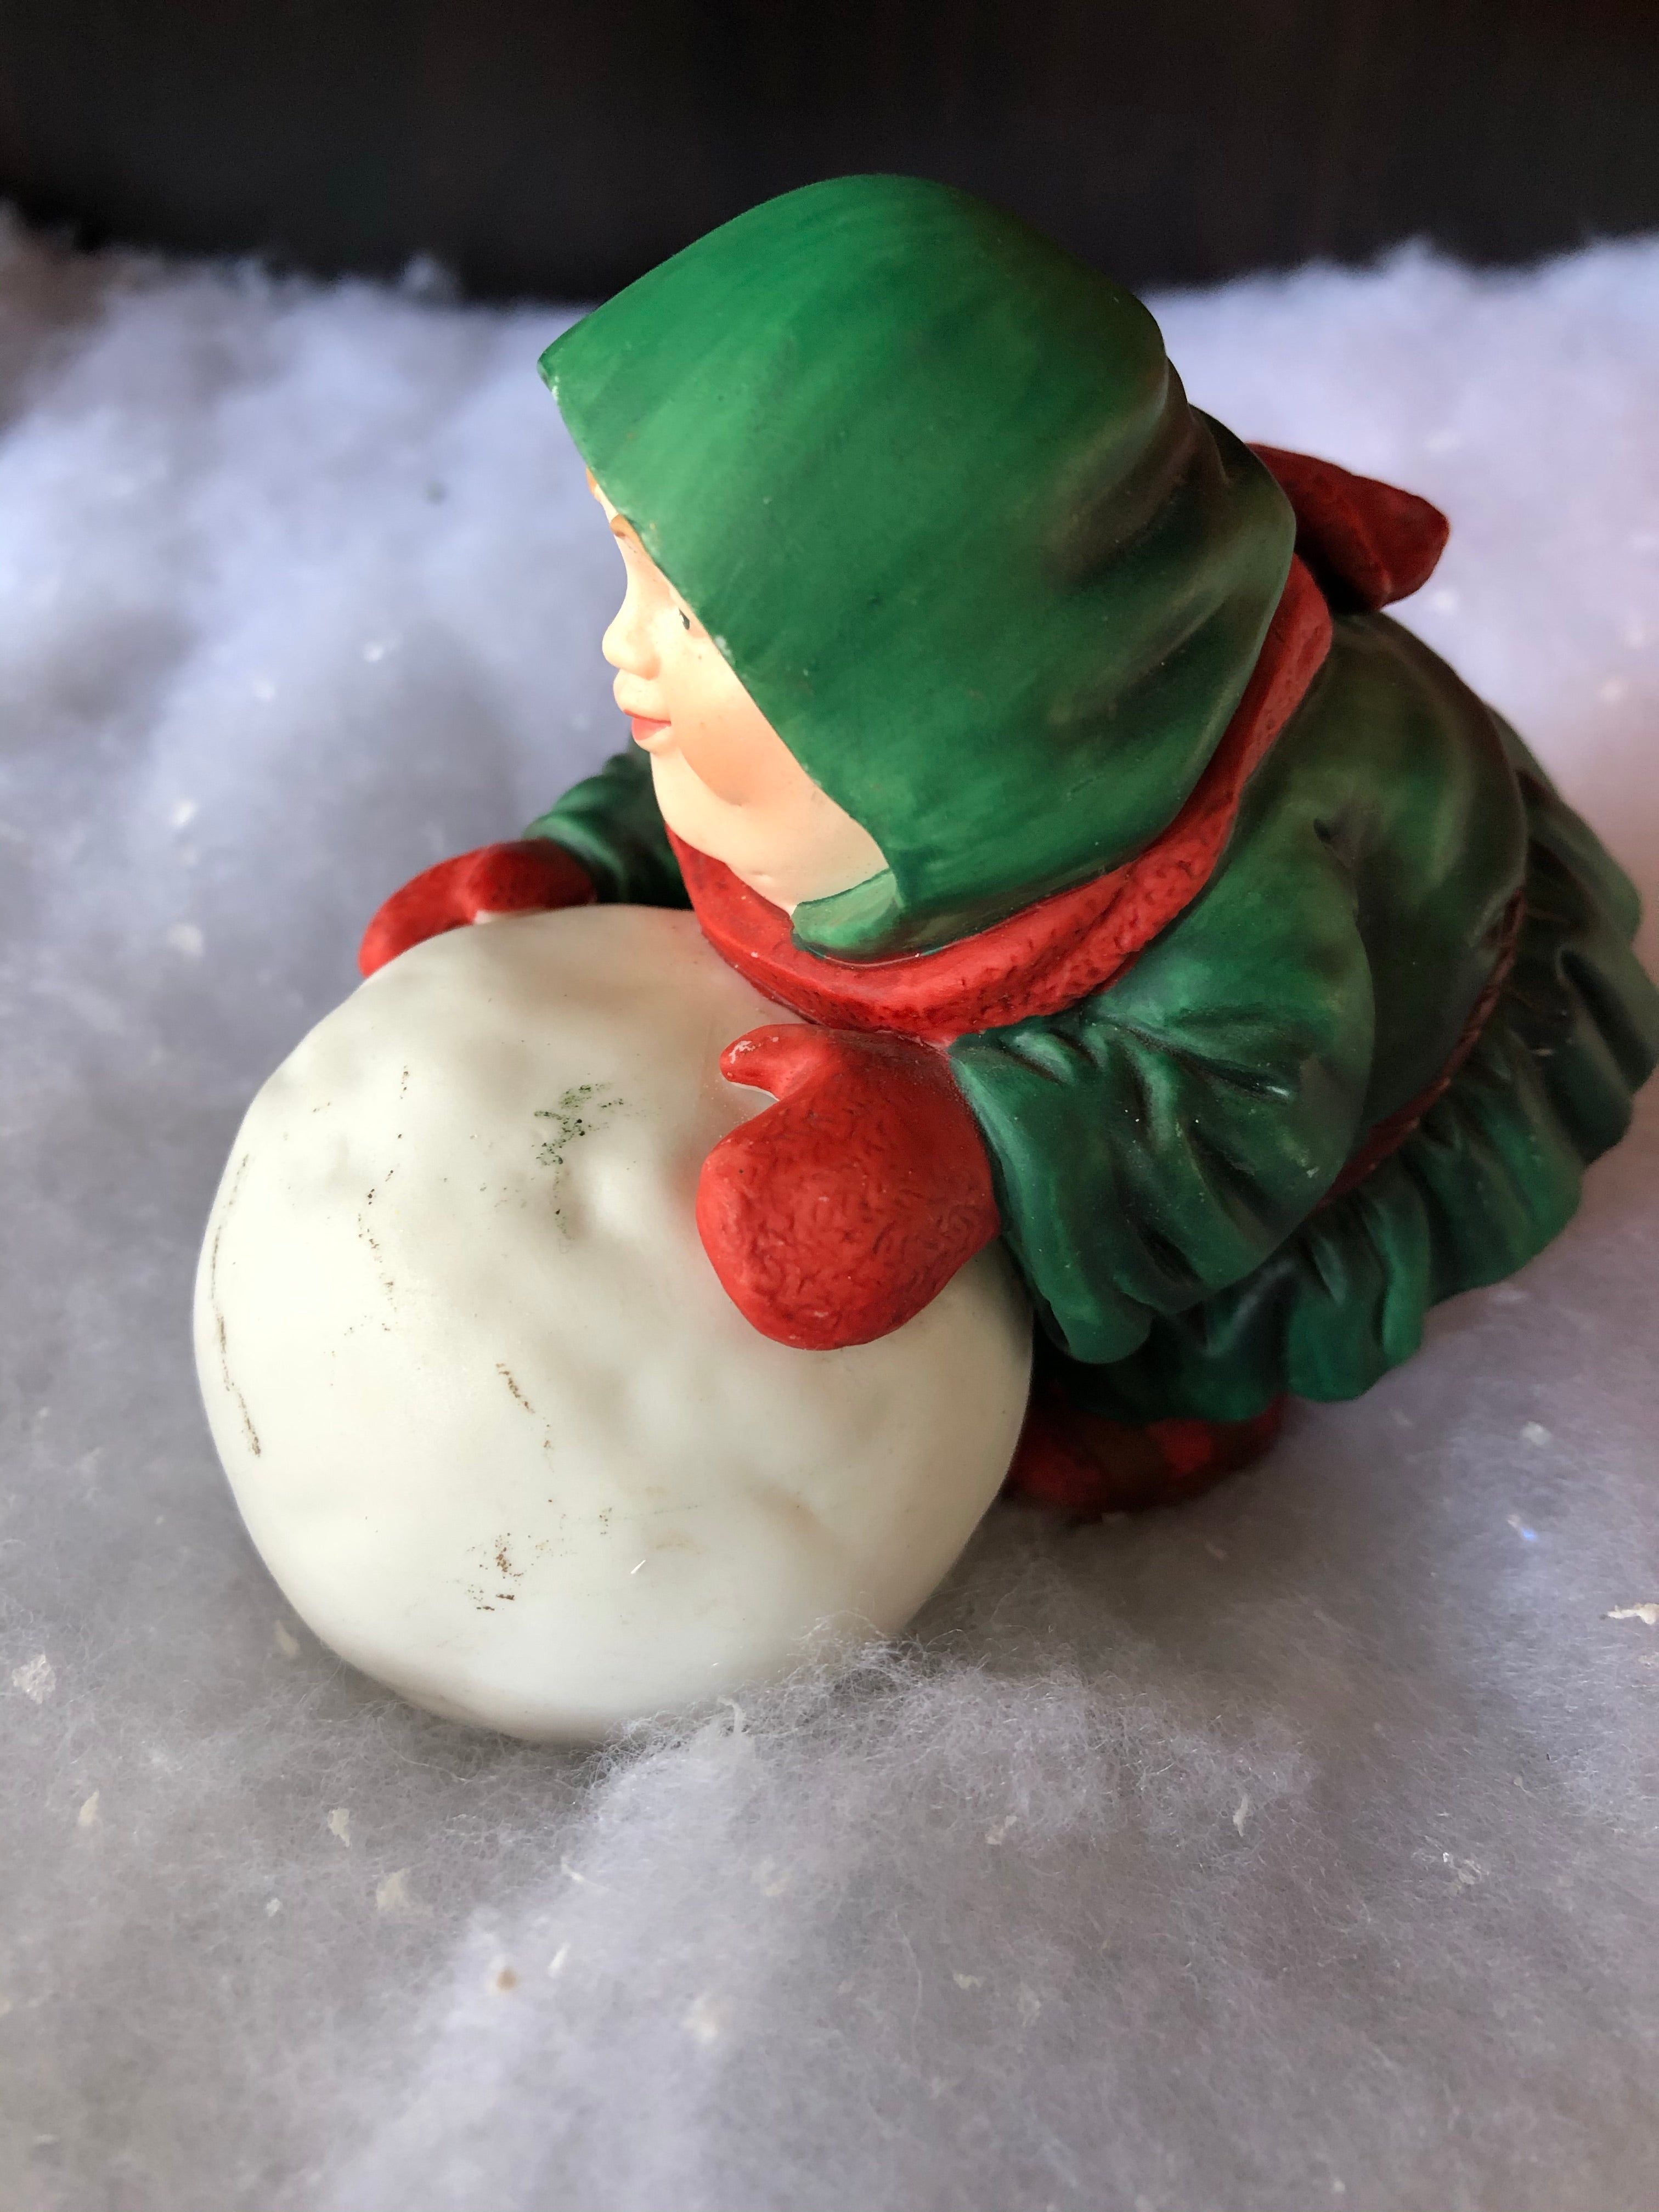 Sebastian the Snowball Maker